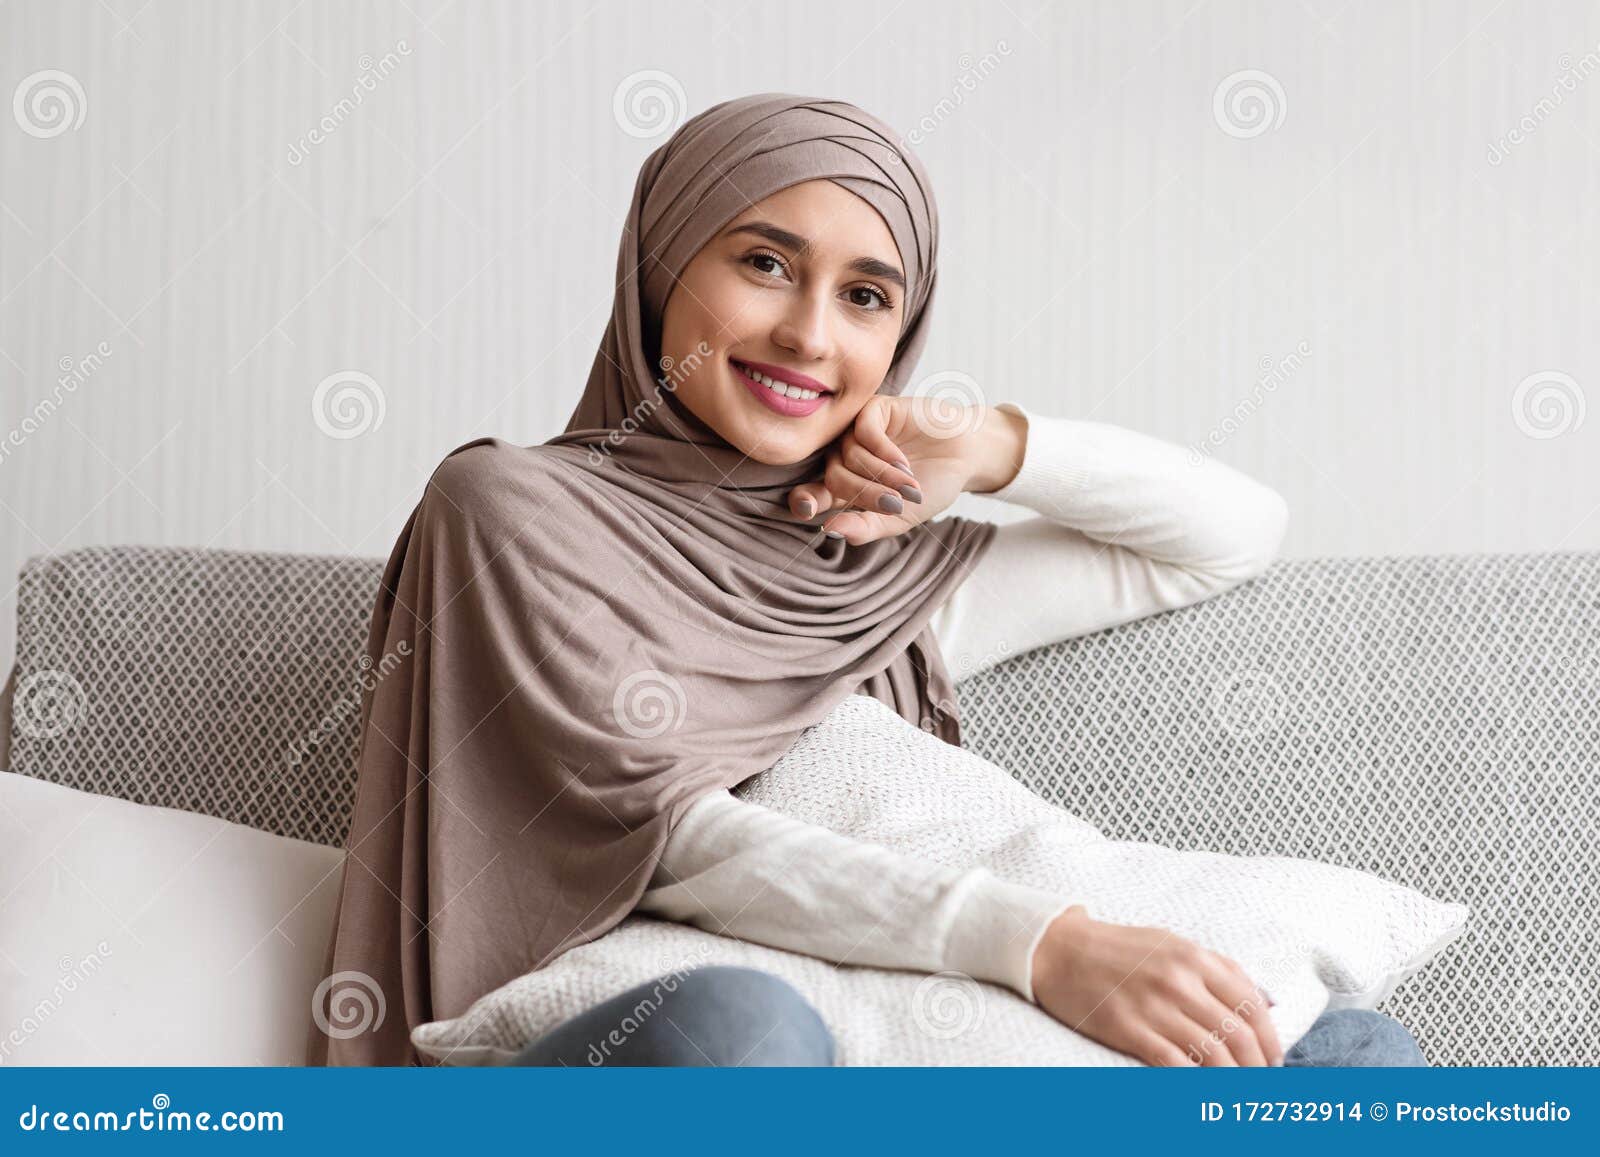 Girl arabic 101 Unique